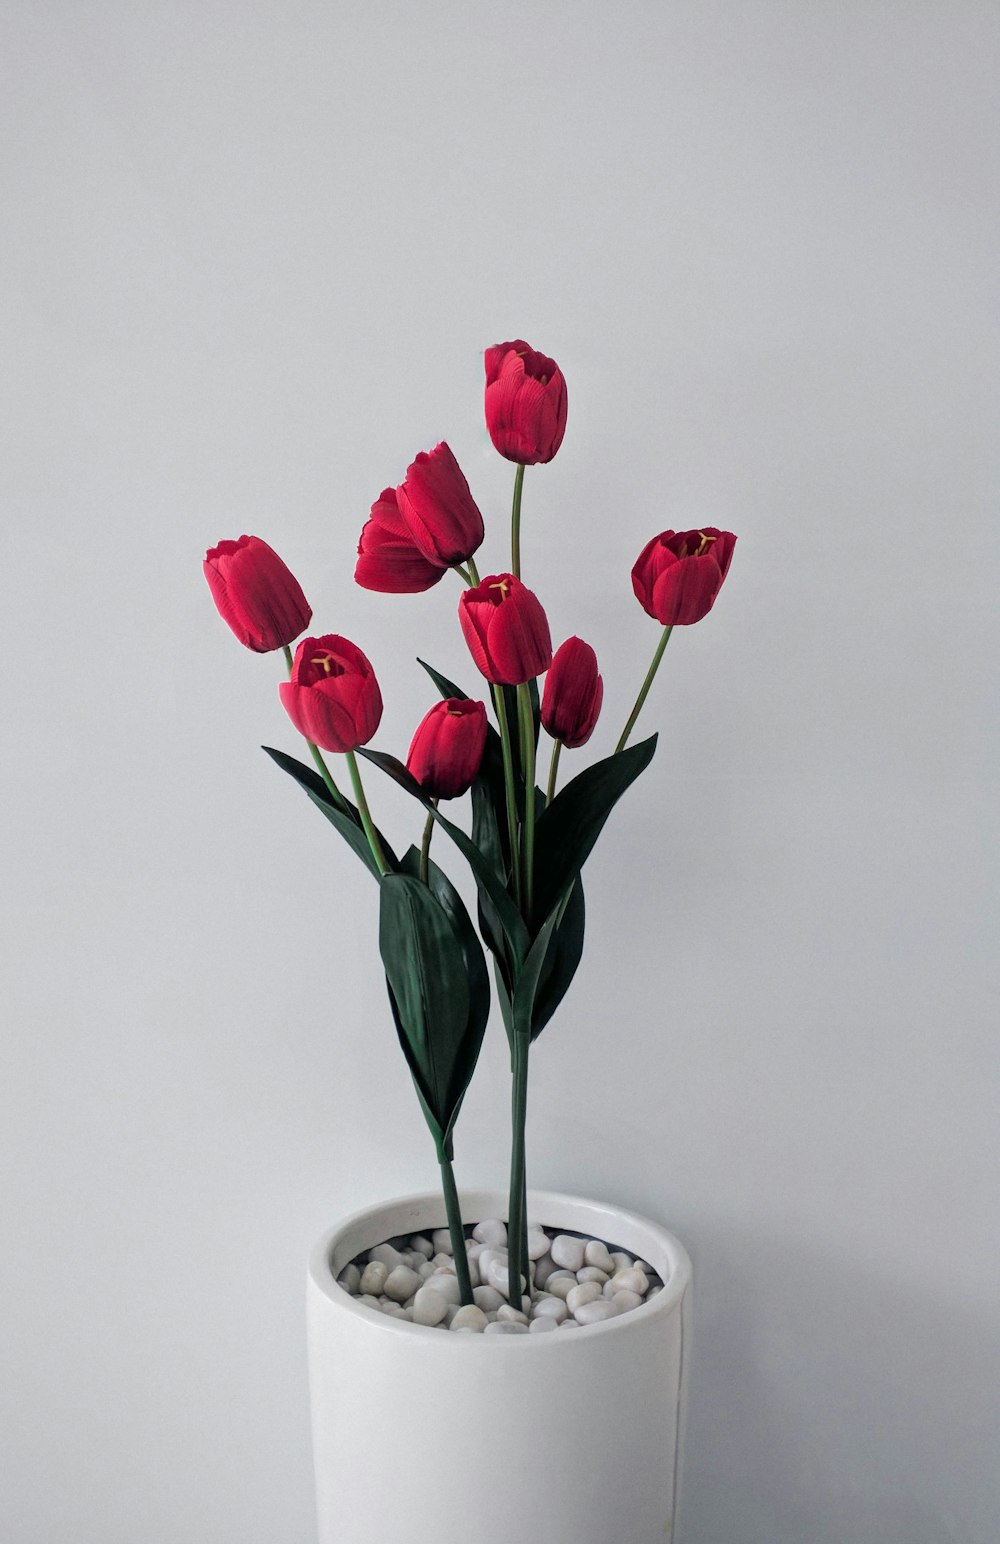 750+ Flower Vase Pictures [HD] | Download Free Images on Unsplash